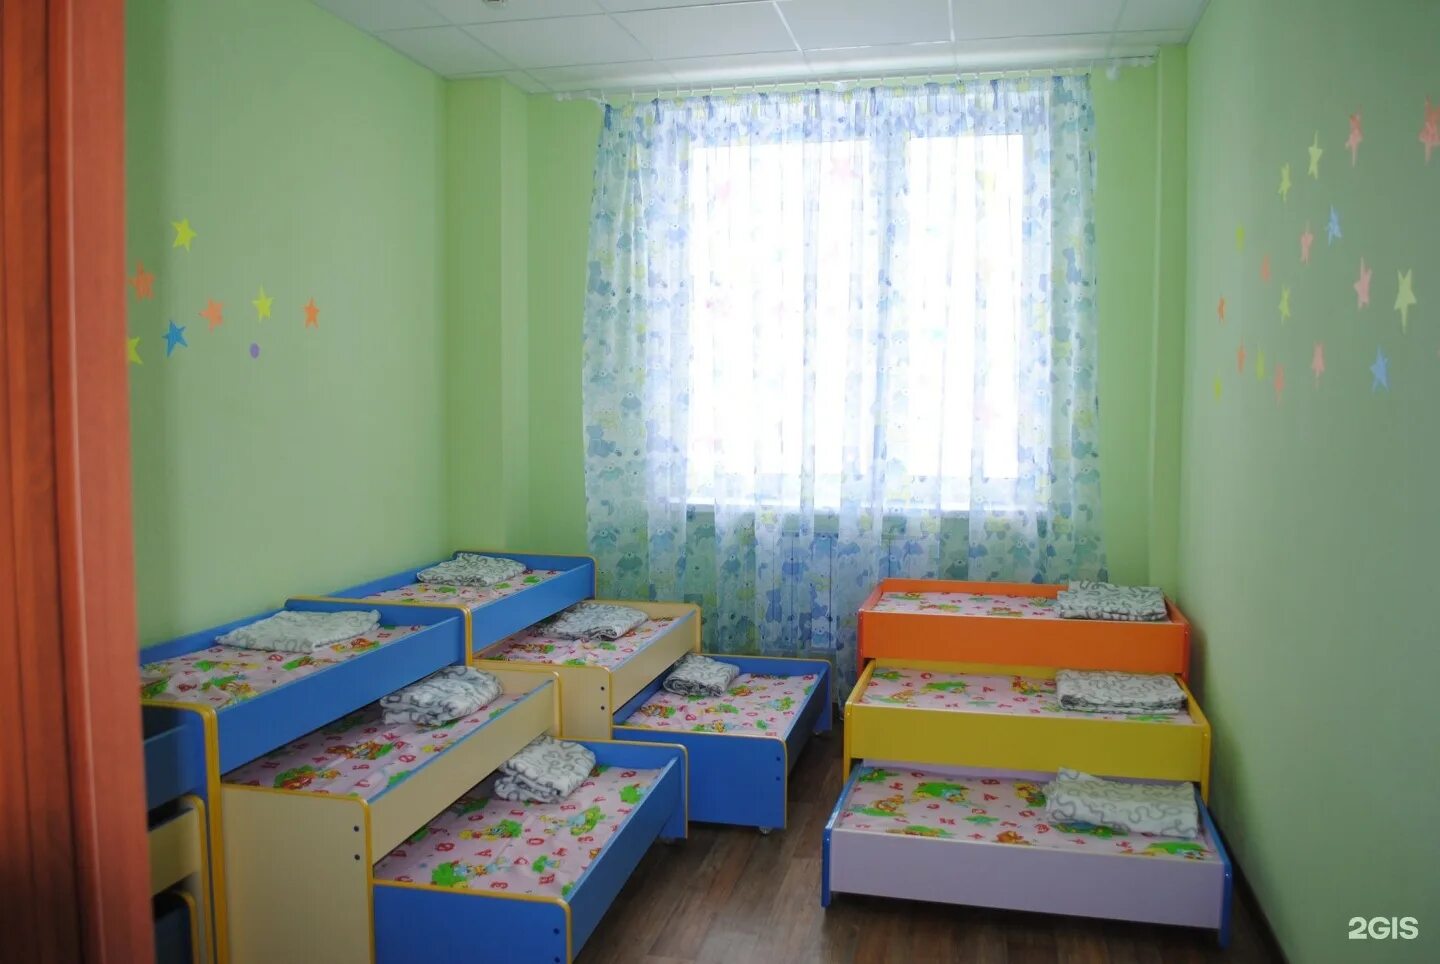 Детский сад красноярск свердловский район. 545 Детский сад Екатеринбург. 395 Детский сад Екатеринбург. ЕКБ детский сад 528.